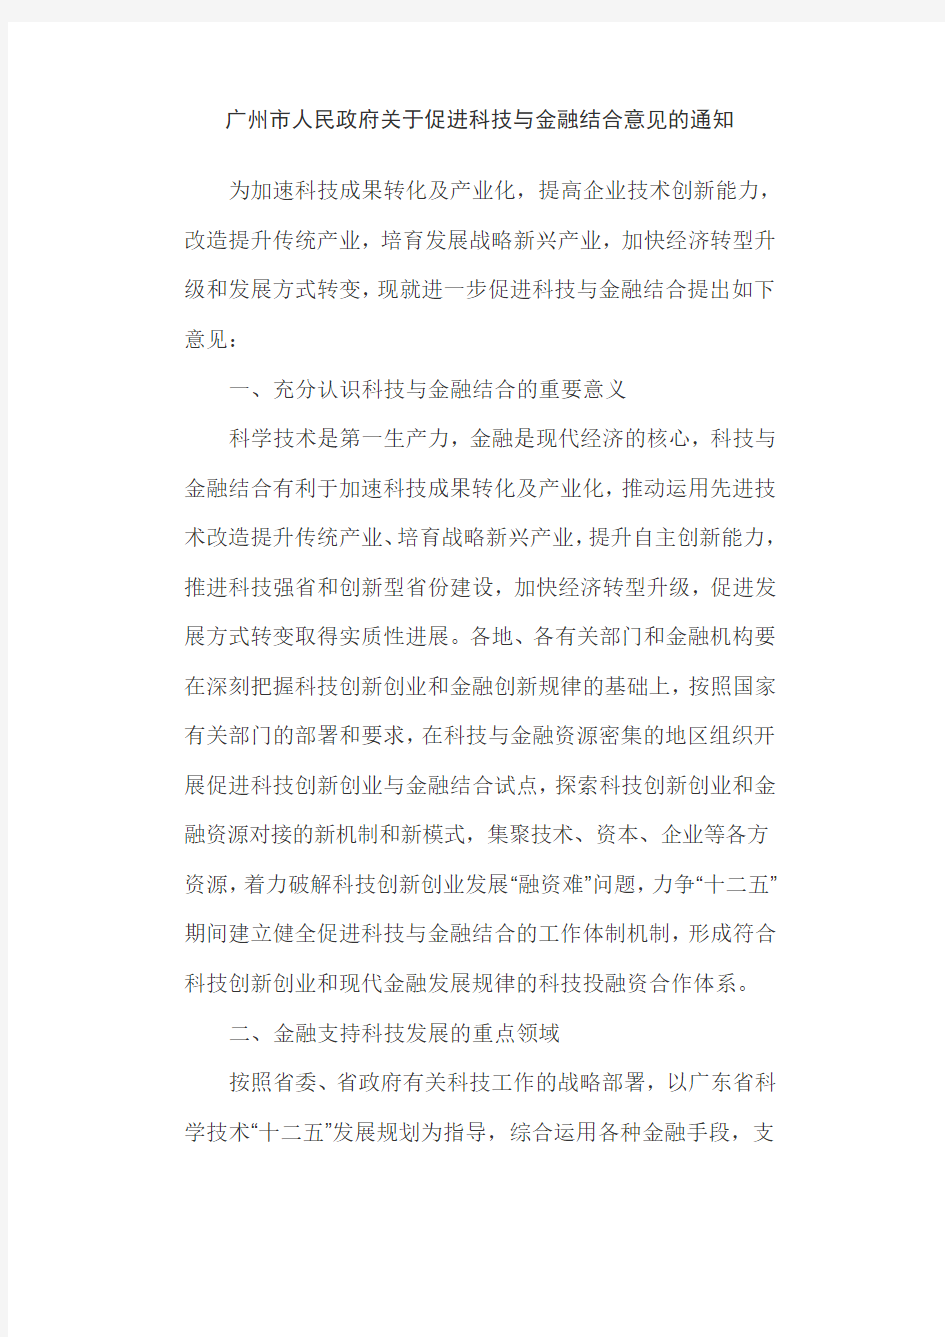 广州市人民政府关于促进科技与金融结合意见的通知